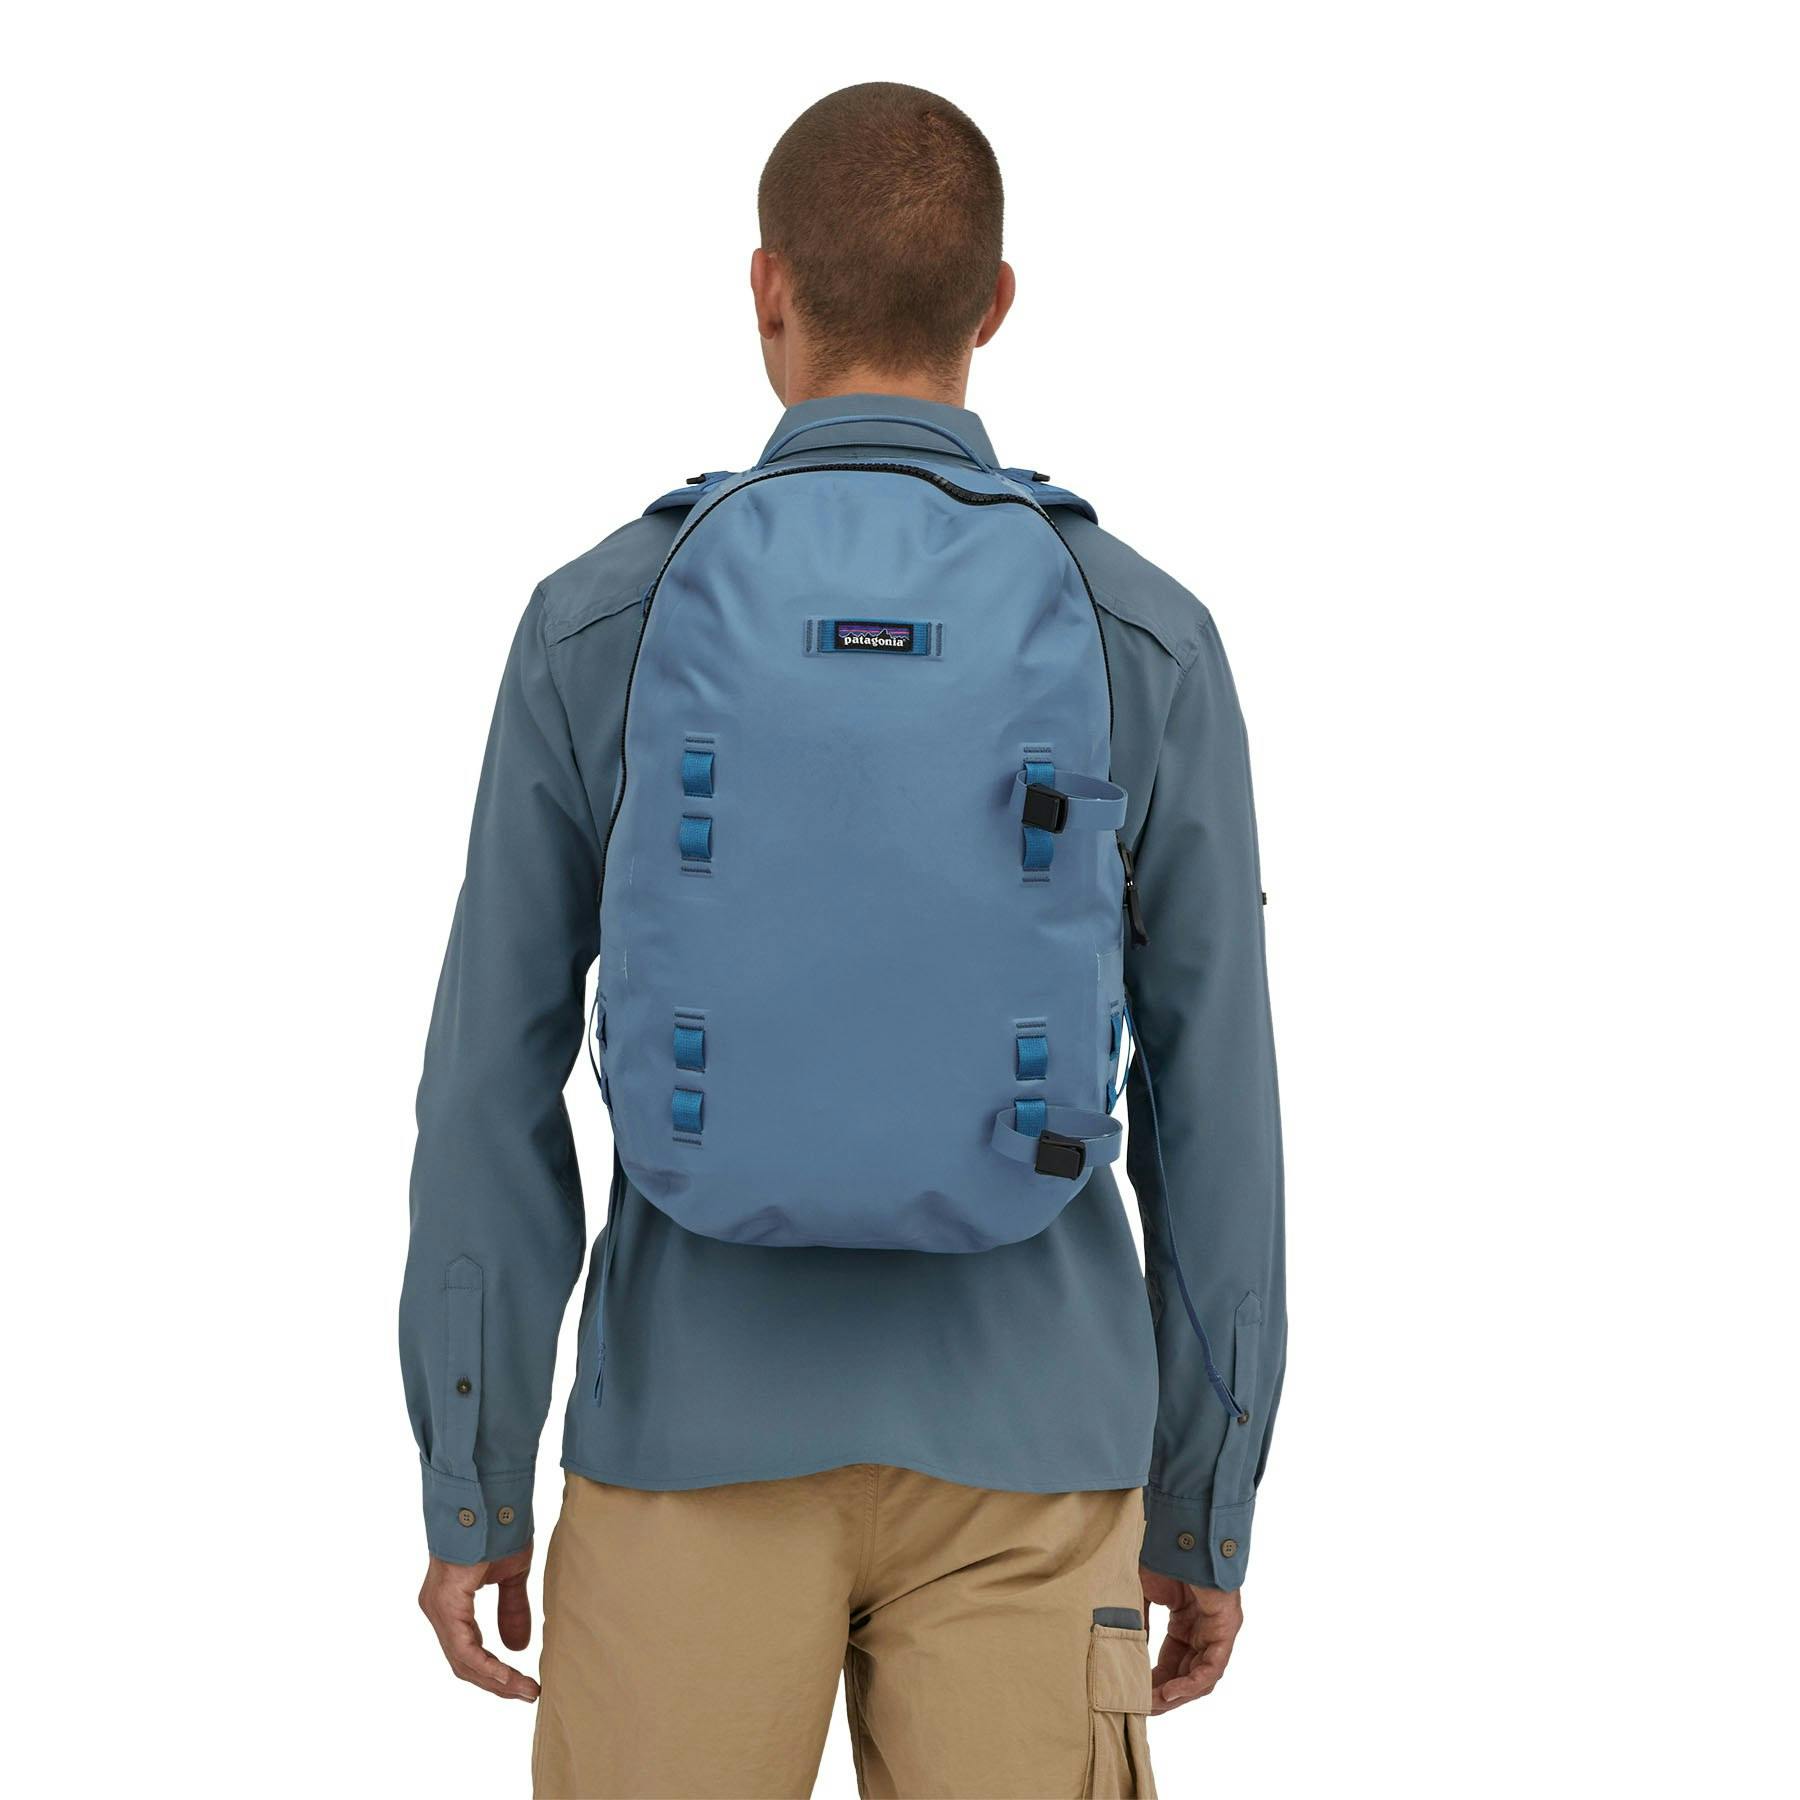 Patagonia Guidewater Backpack - Pigeon Blue, Backpacks